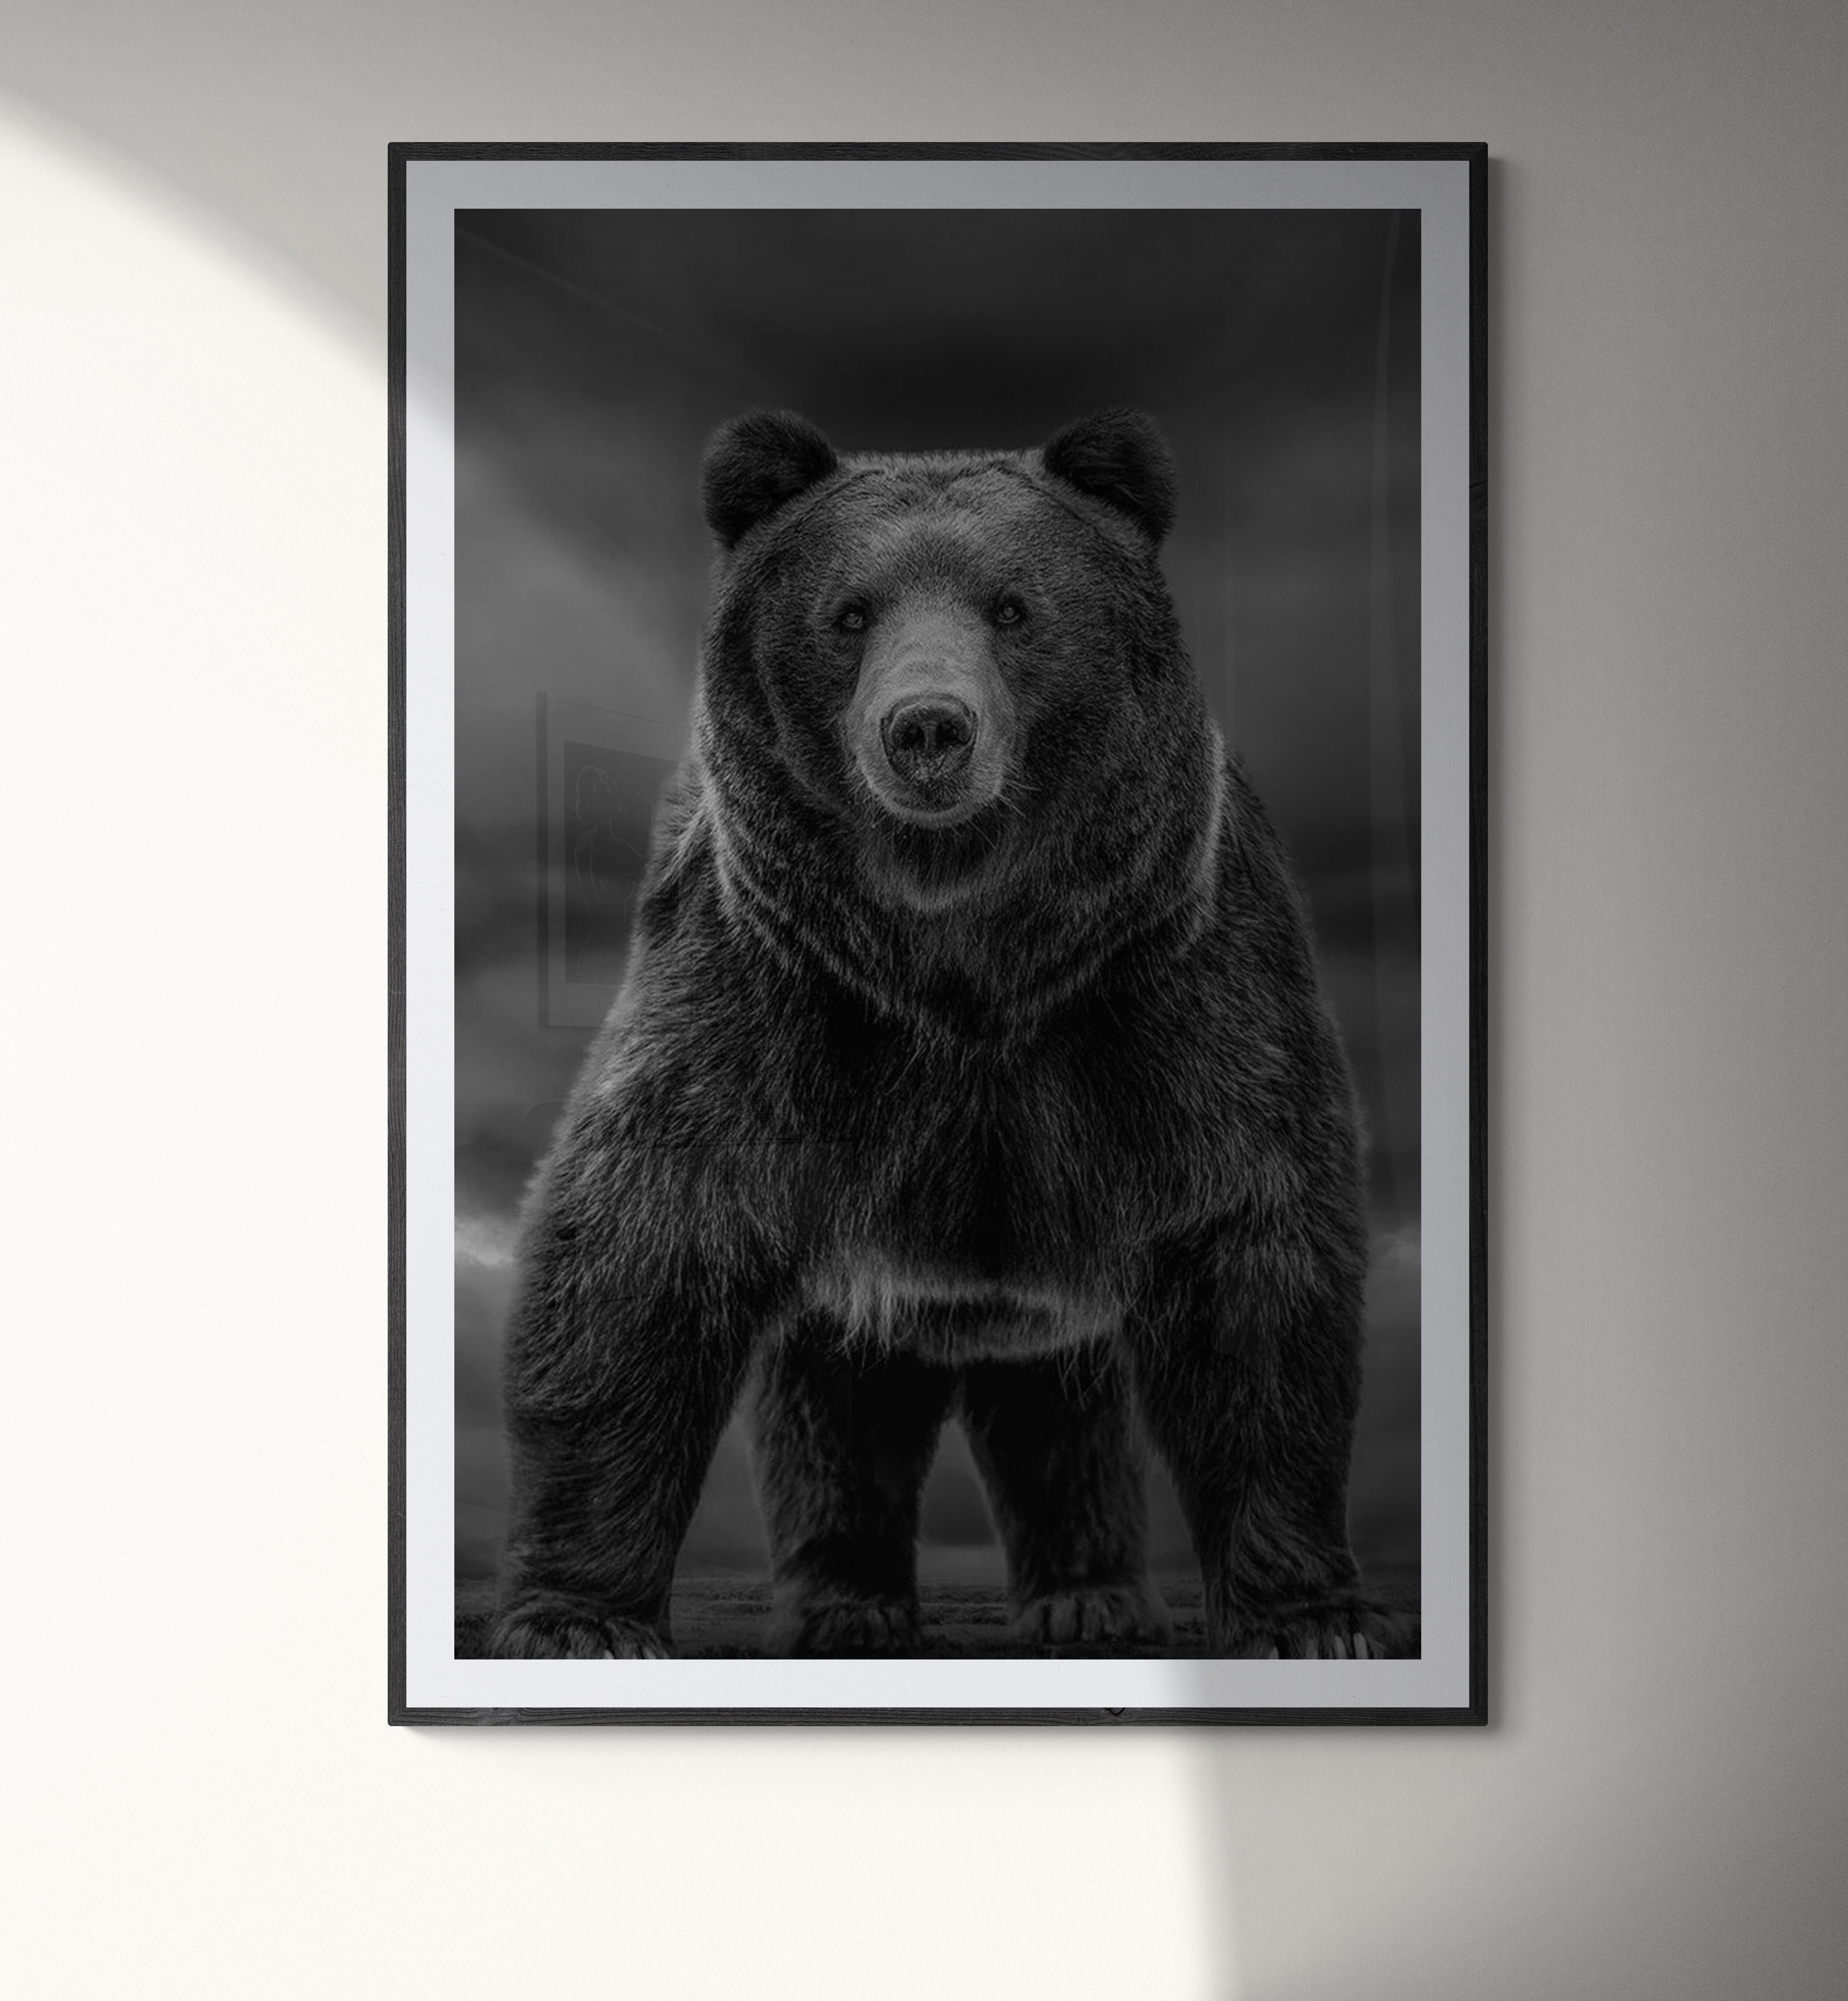 Dies ist eine zeitgenössische Fotografie eines Kodiakbären.  Dies wurde 2019 auf Kodiak Island gedreht. 
60x40 
Auflage von 10 Stück
Signiert und nummeriert
Archivalisches Pigmentpapier
Einrahmung verfügbar. Erkundigen Sie sich nach den Preisen.